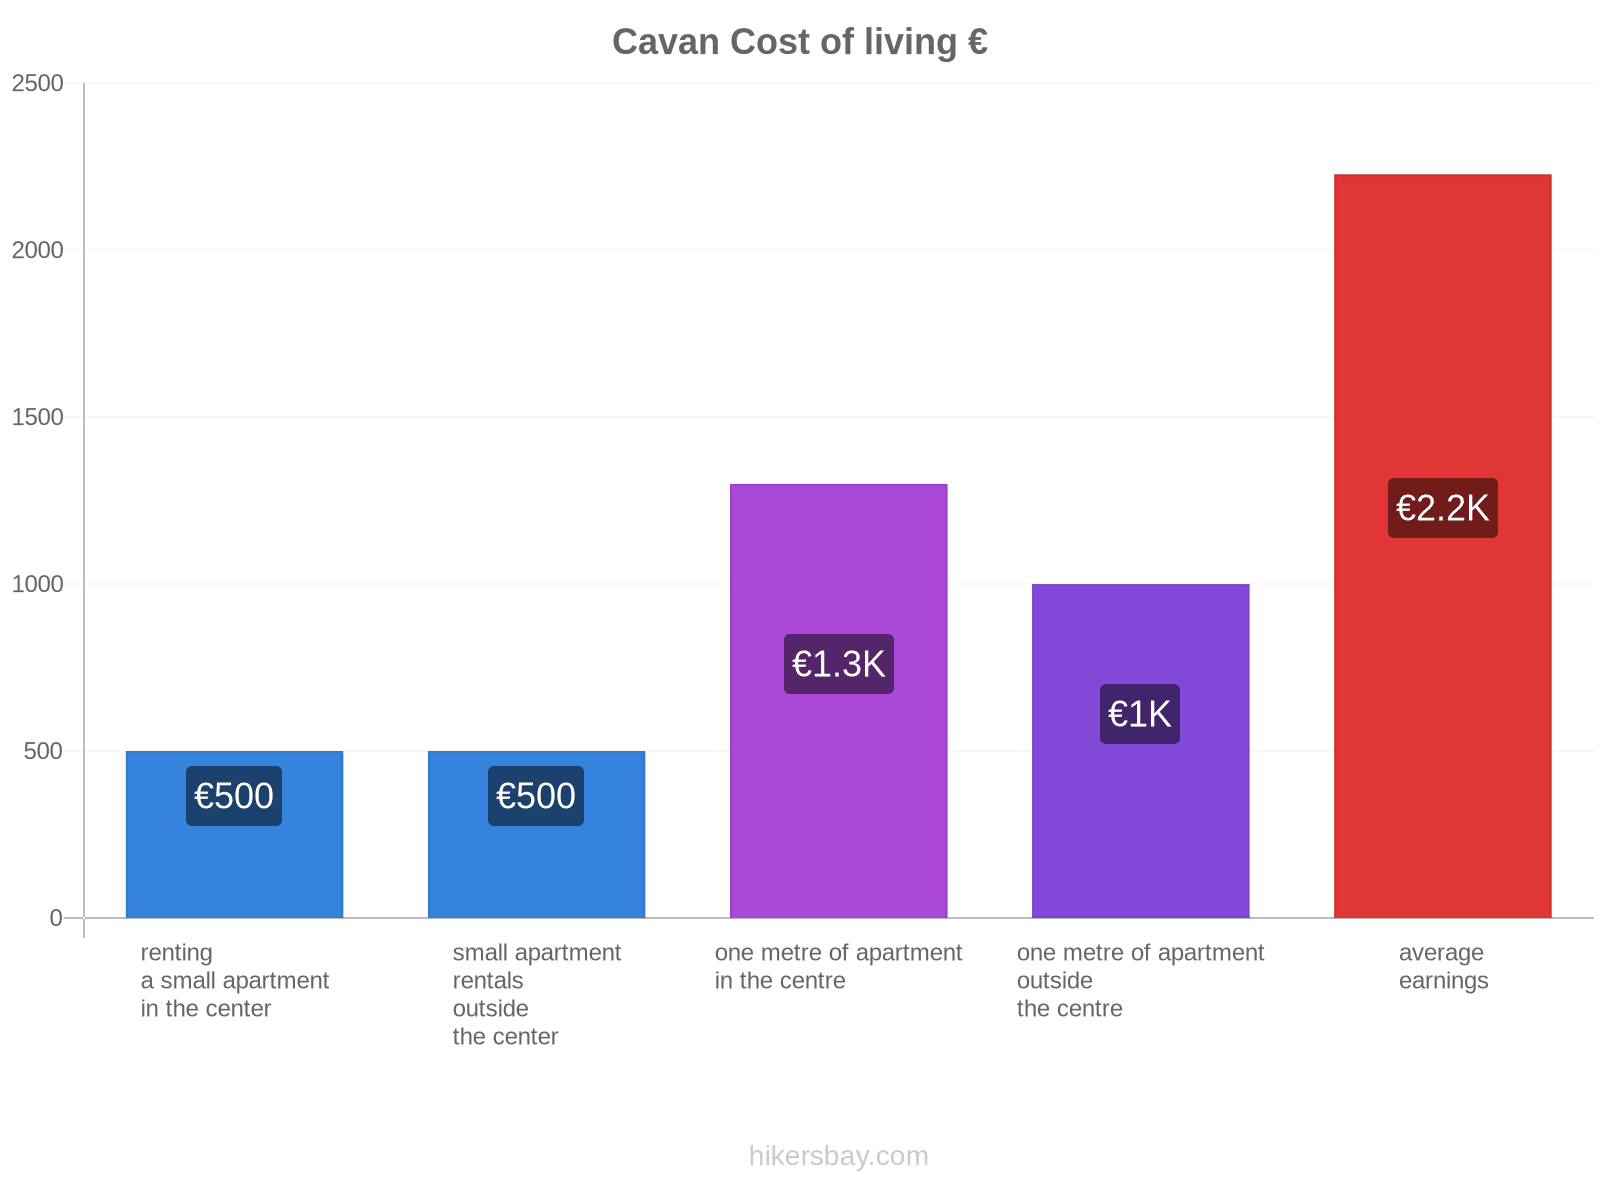 Cavan cost of living hikersbay.com